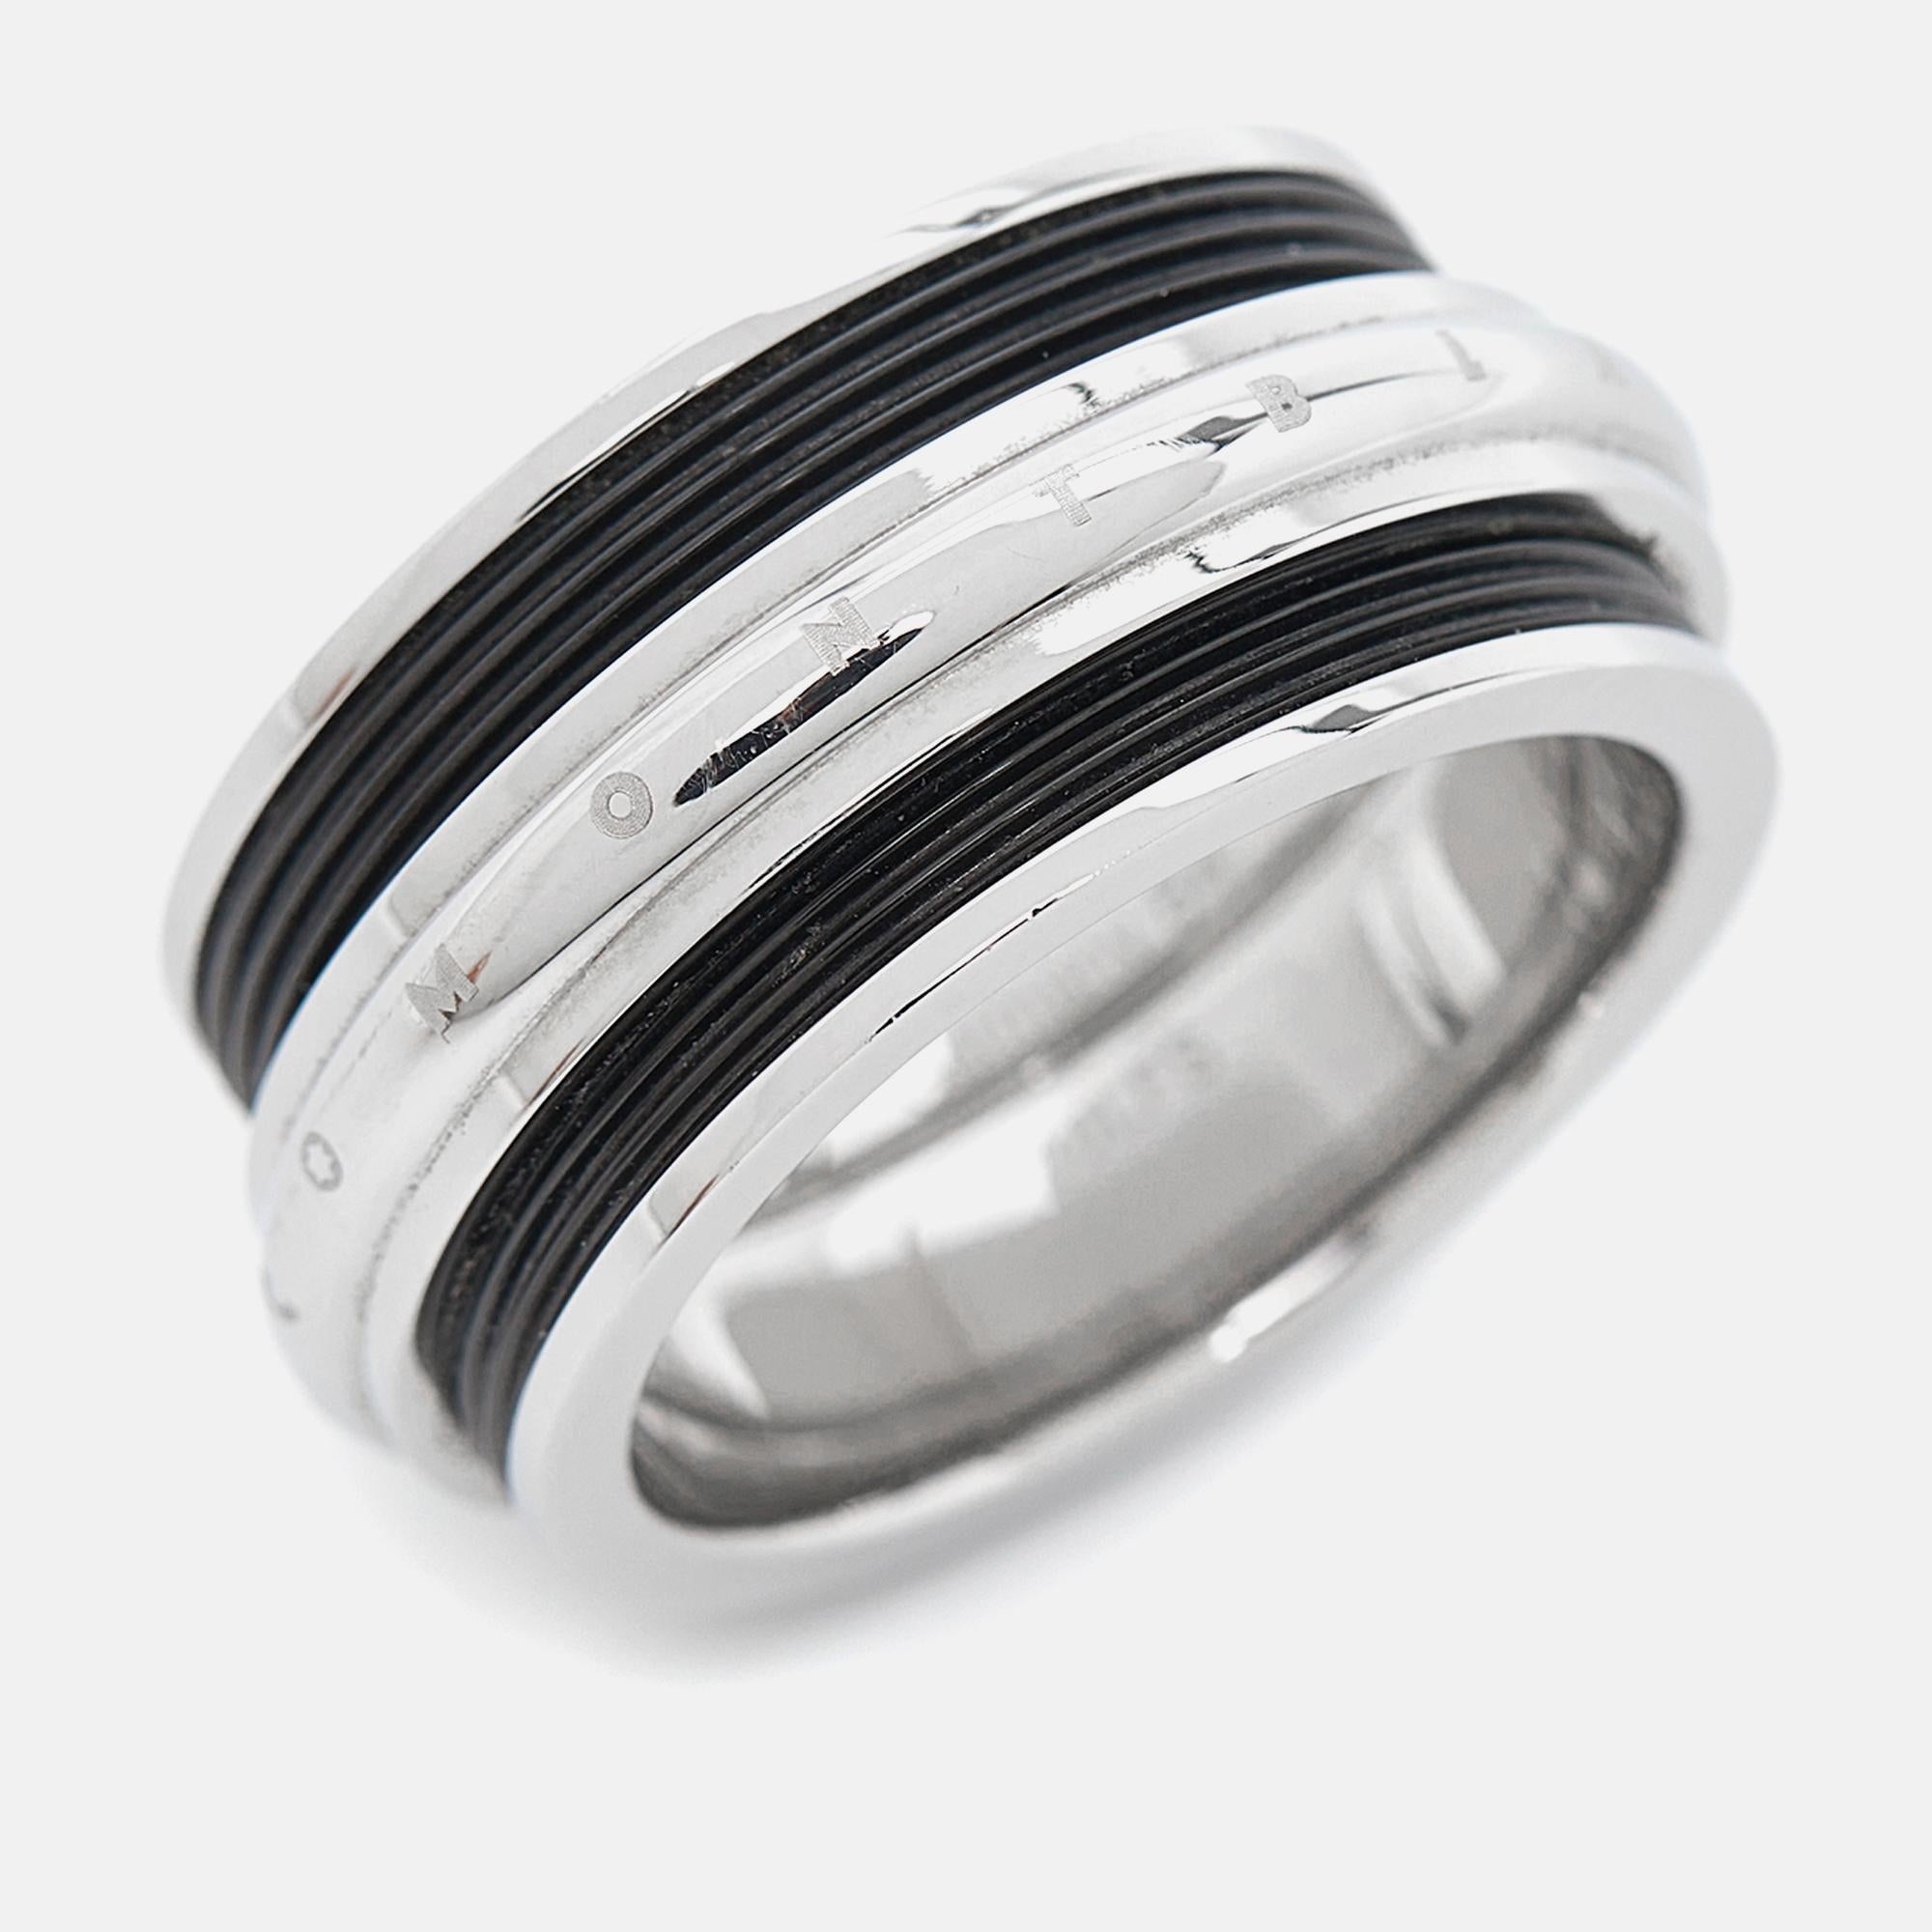 Gut gemachte Accessoires sind ein Zeichen von Kreativität und Stil. Dieser Montblanc Sliding Ring aus der Men's Contemporary Collection ist für eine lange Lebensdauer konzipiert. Das aus silberfarbenem Metall und schwarzem PVD-Stahl gefertigte Stück